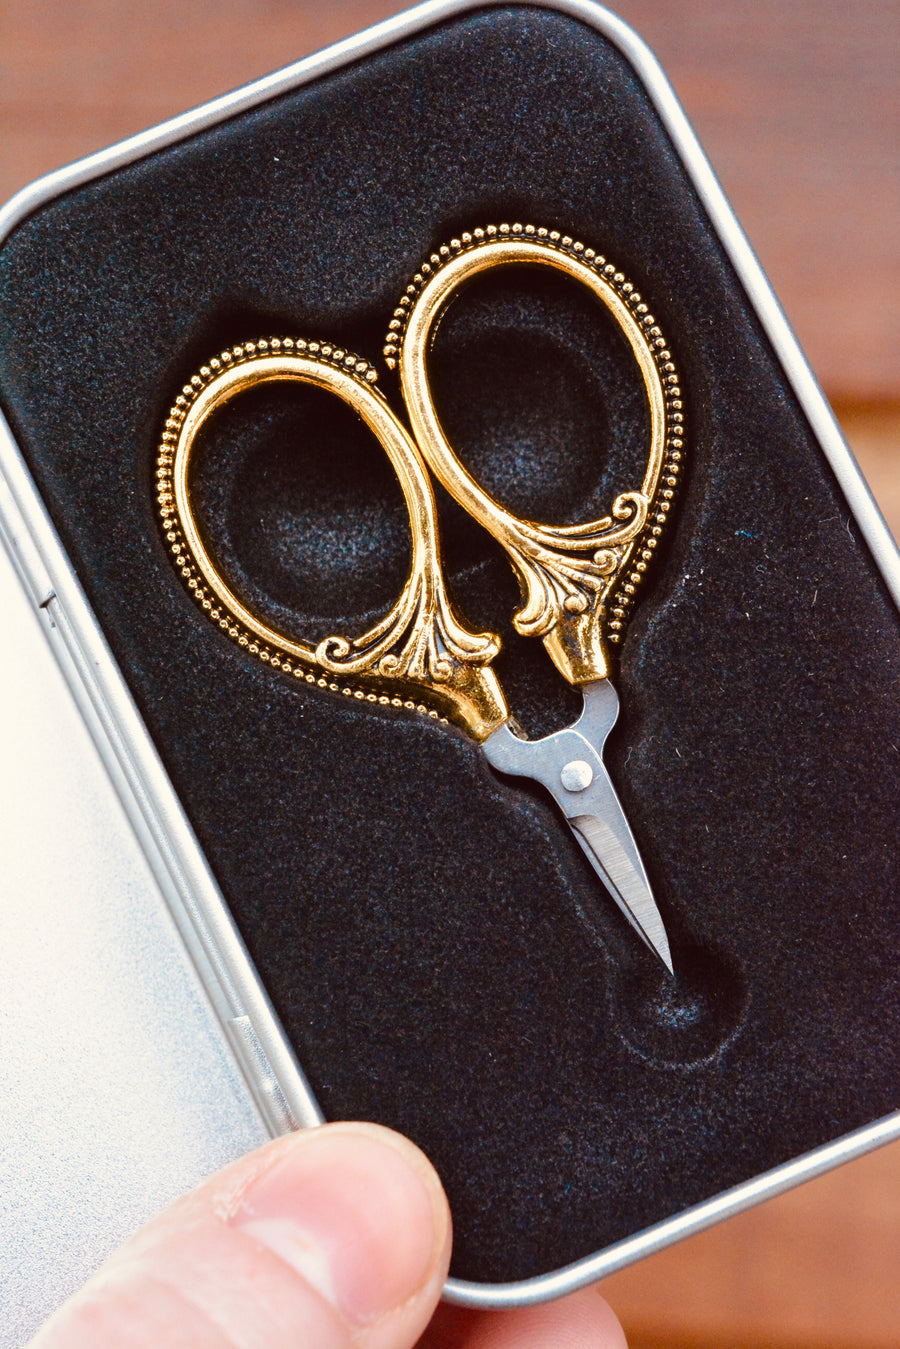 Antique Pocket Thread Scissors